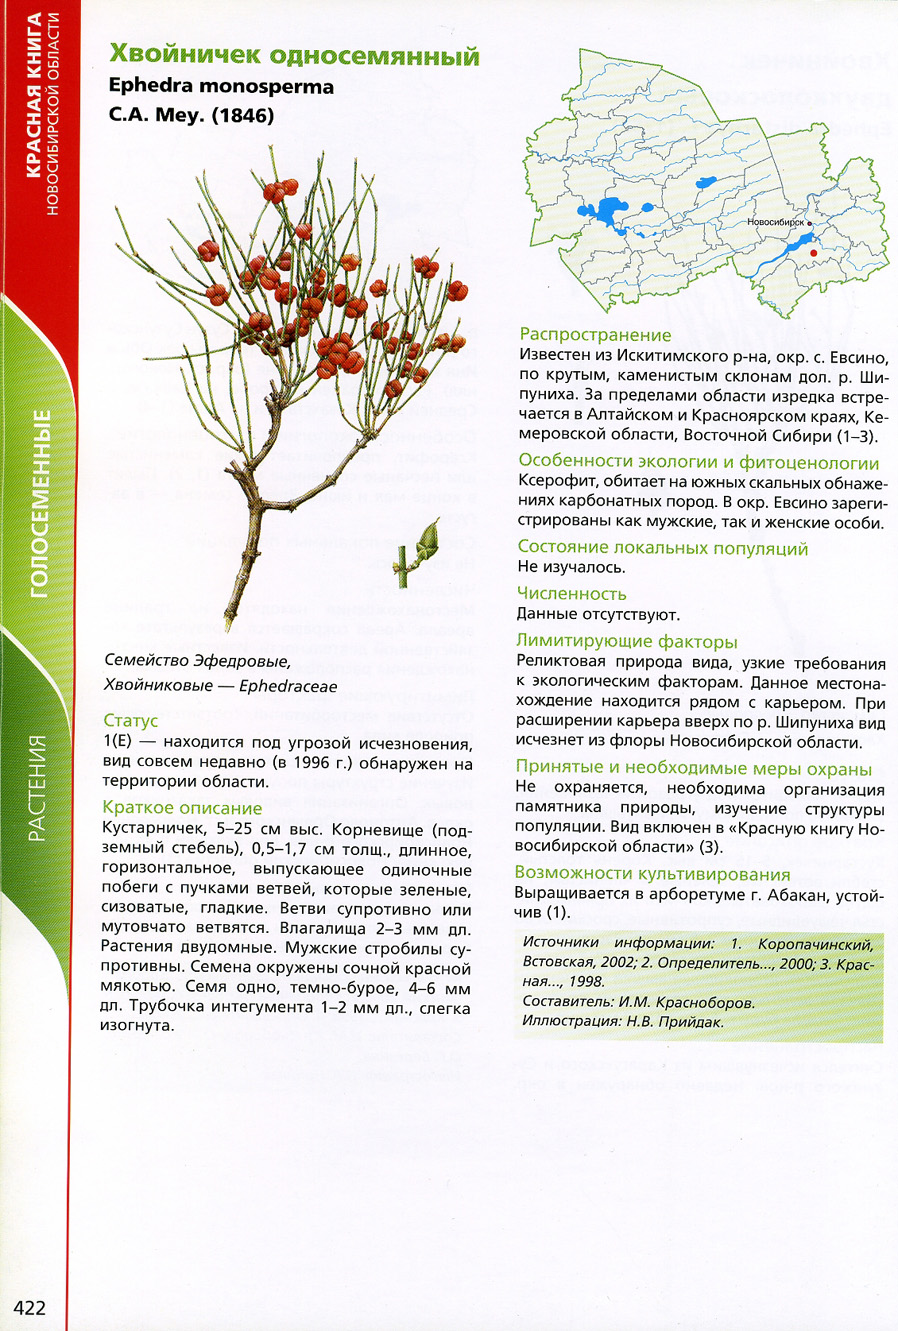 Растения и животные Новосибирской области занесенные в красную